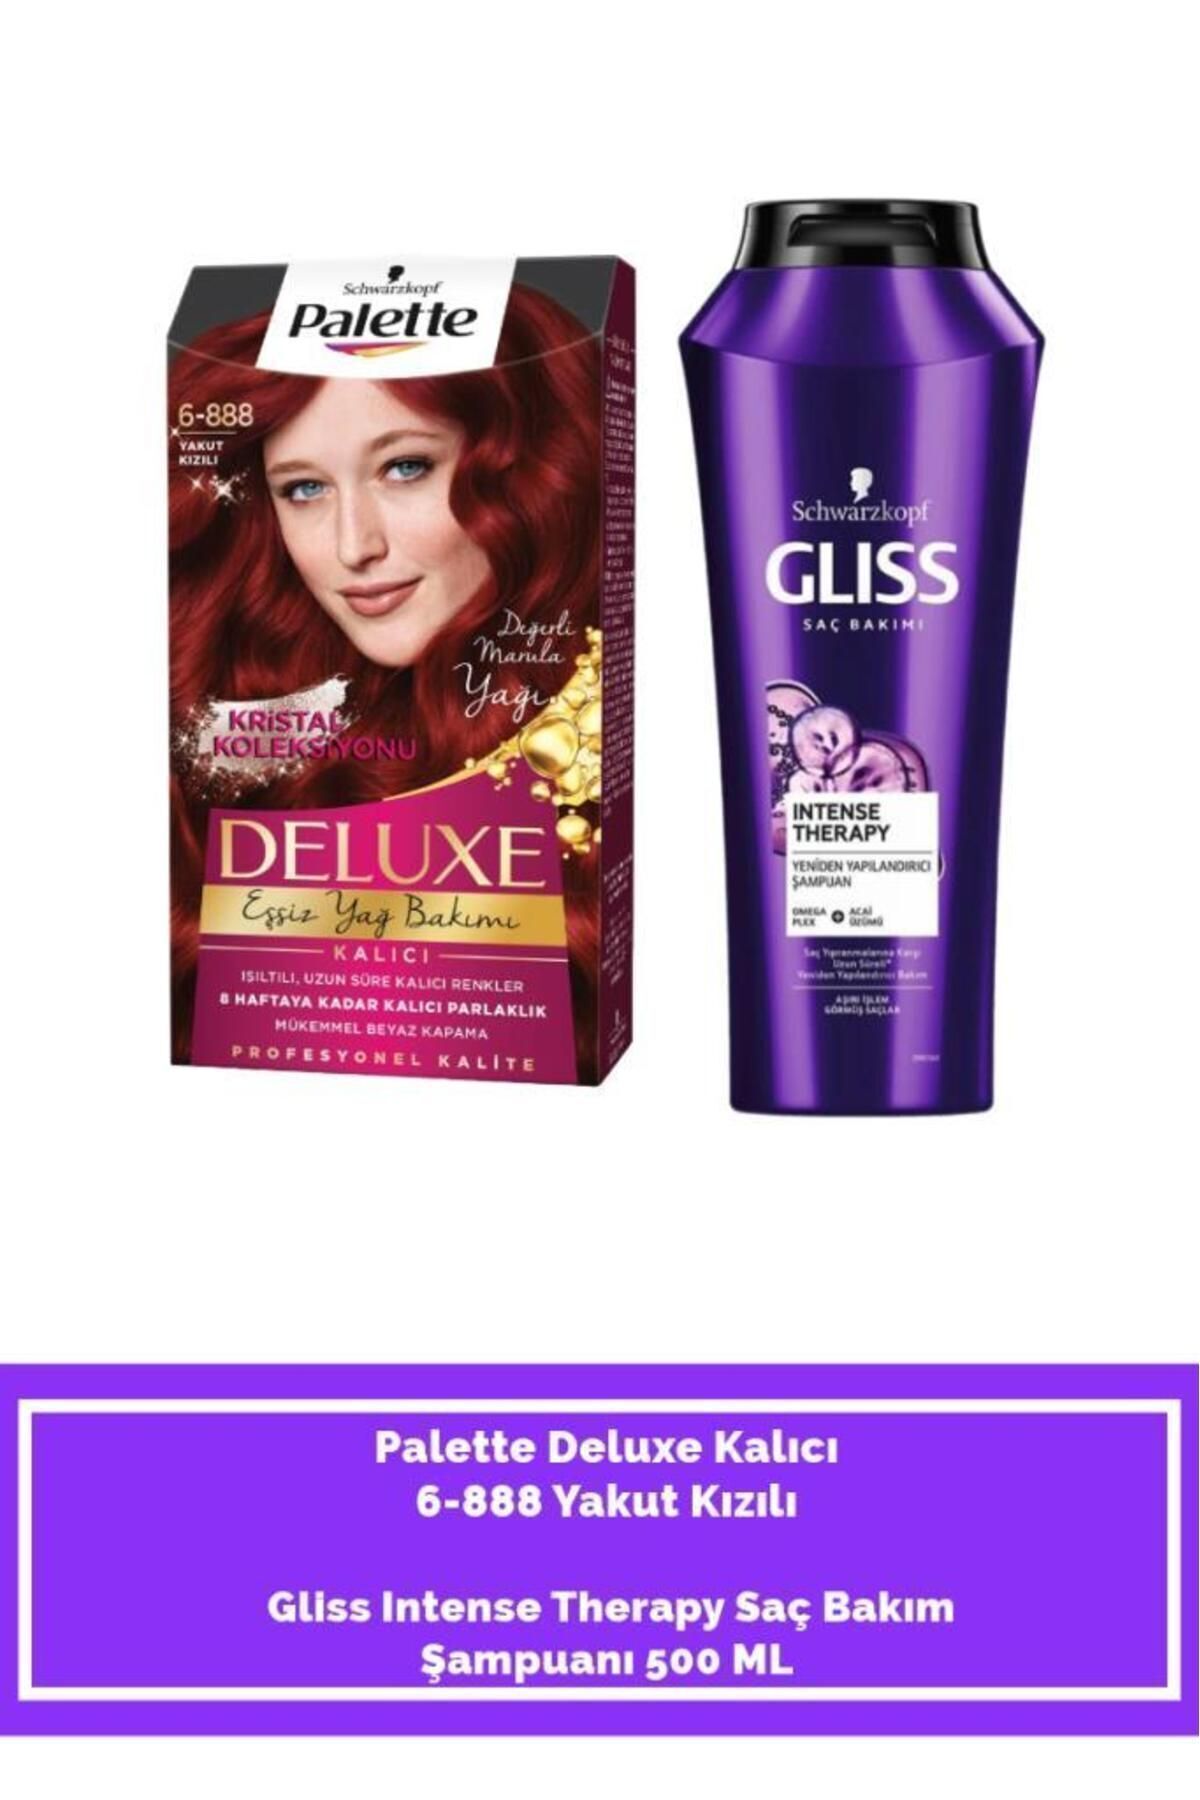 Palette Deluxe 6-888 Yakut Kızılı+ Gliss Intense Therapy Saç Bakım Şampuanı 500 ML